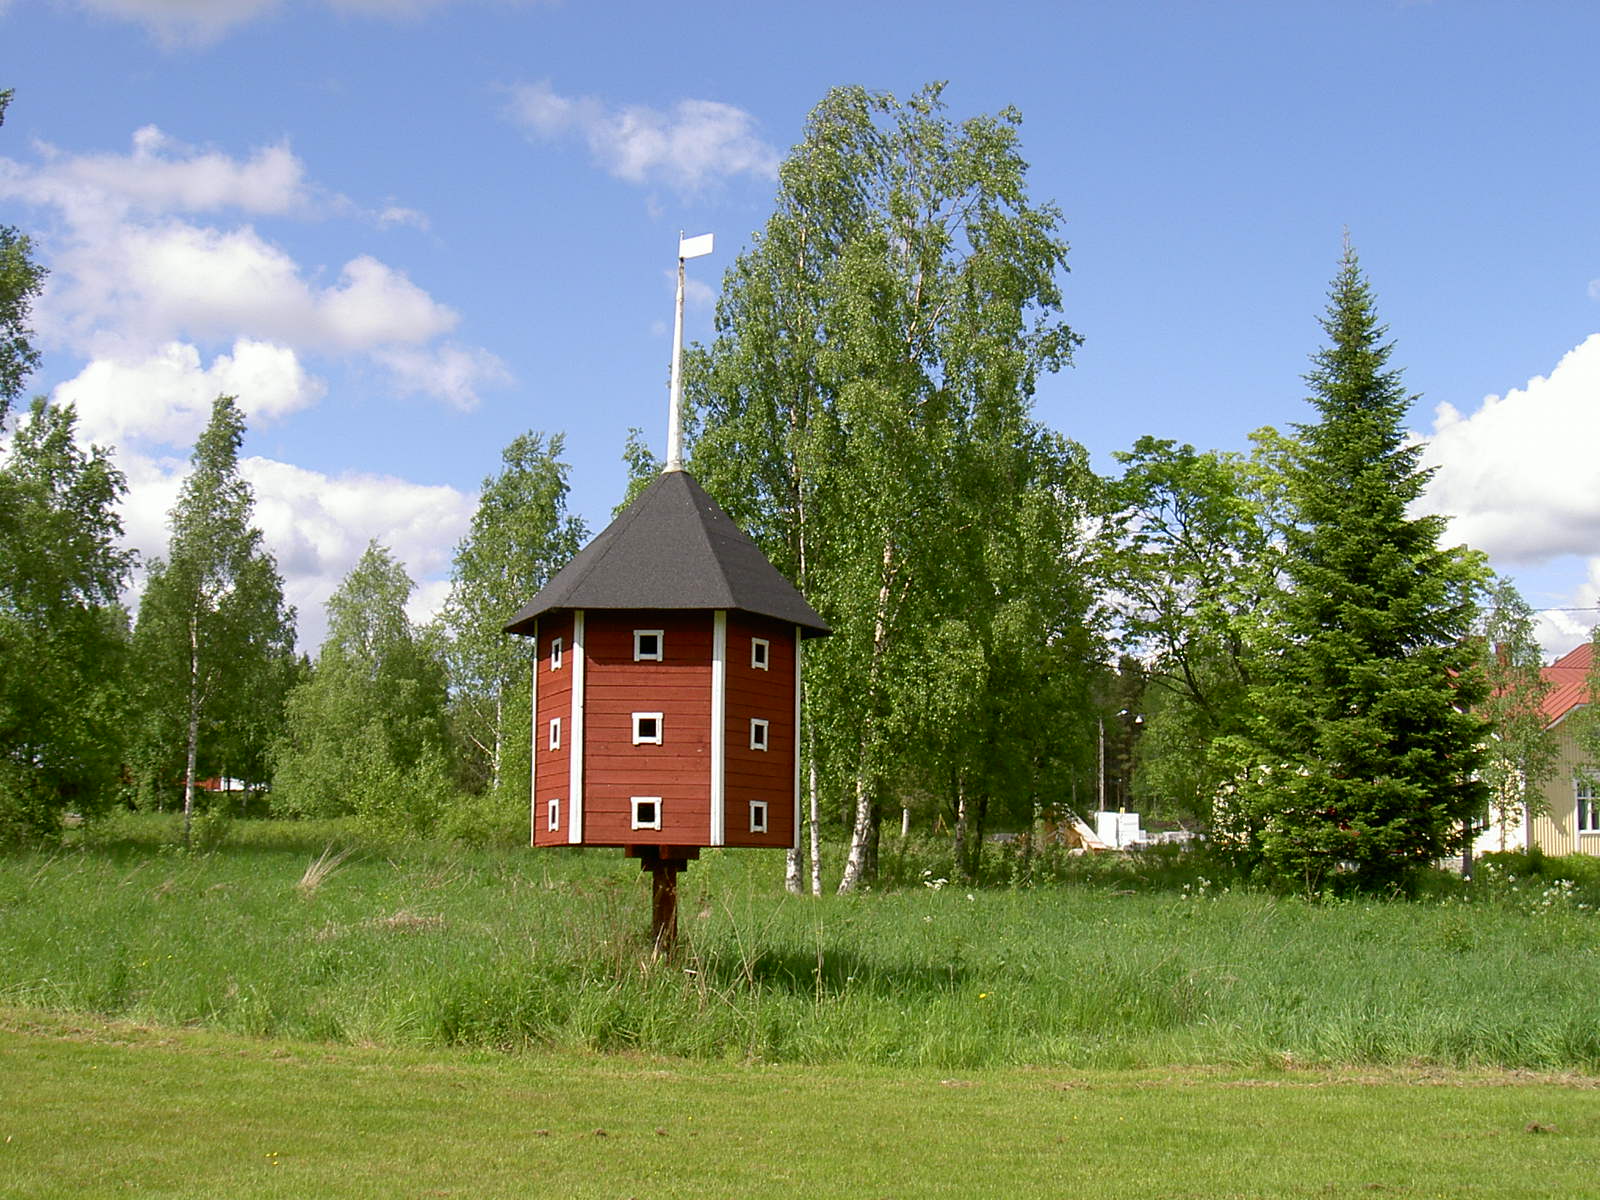 Det här duvslaget som byggdes 1986 är en kopia av det duvslaget som "Lillsjö-Bagarin" byggdes på samma ställe på 1920-talet. Ännu på 70-talet bodde det tamduvor i det gamla duvslaget men inte i kopian. Föreningshuset Majbo syns till höger.